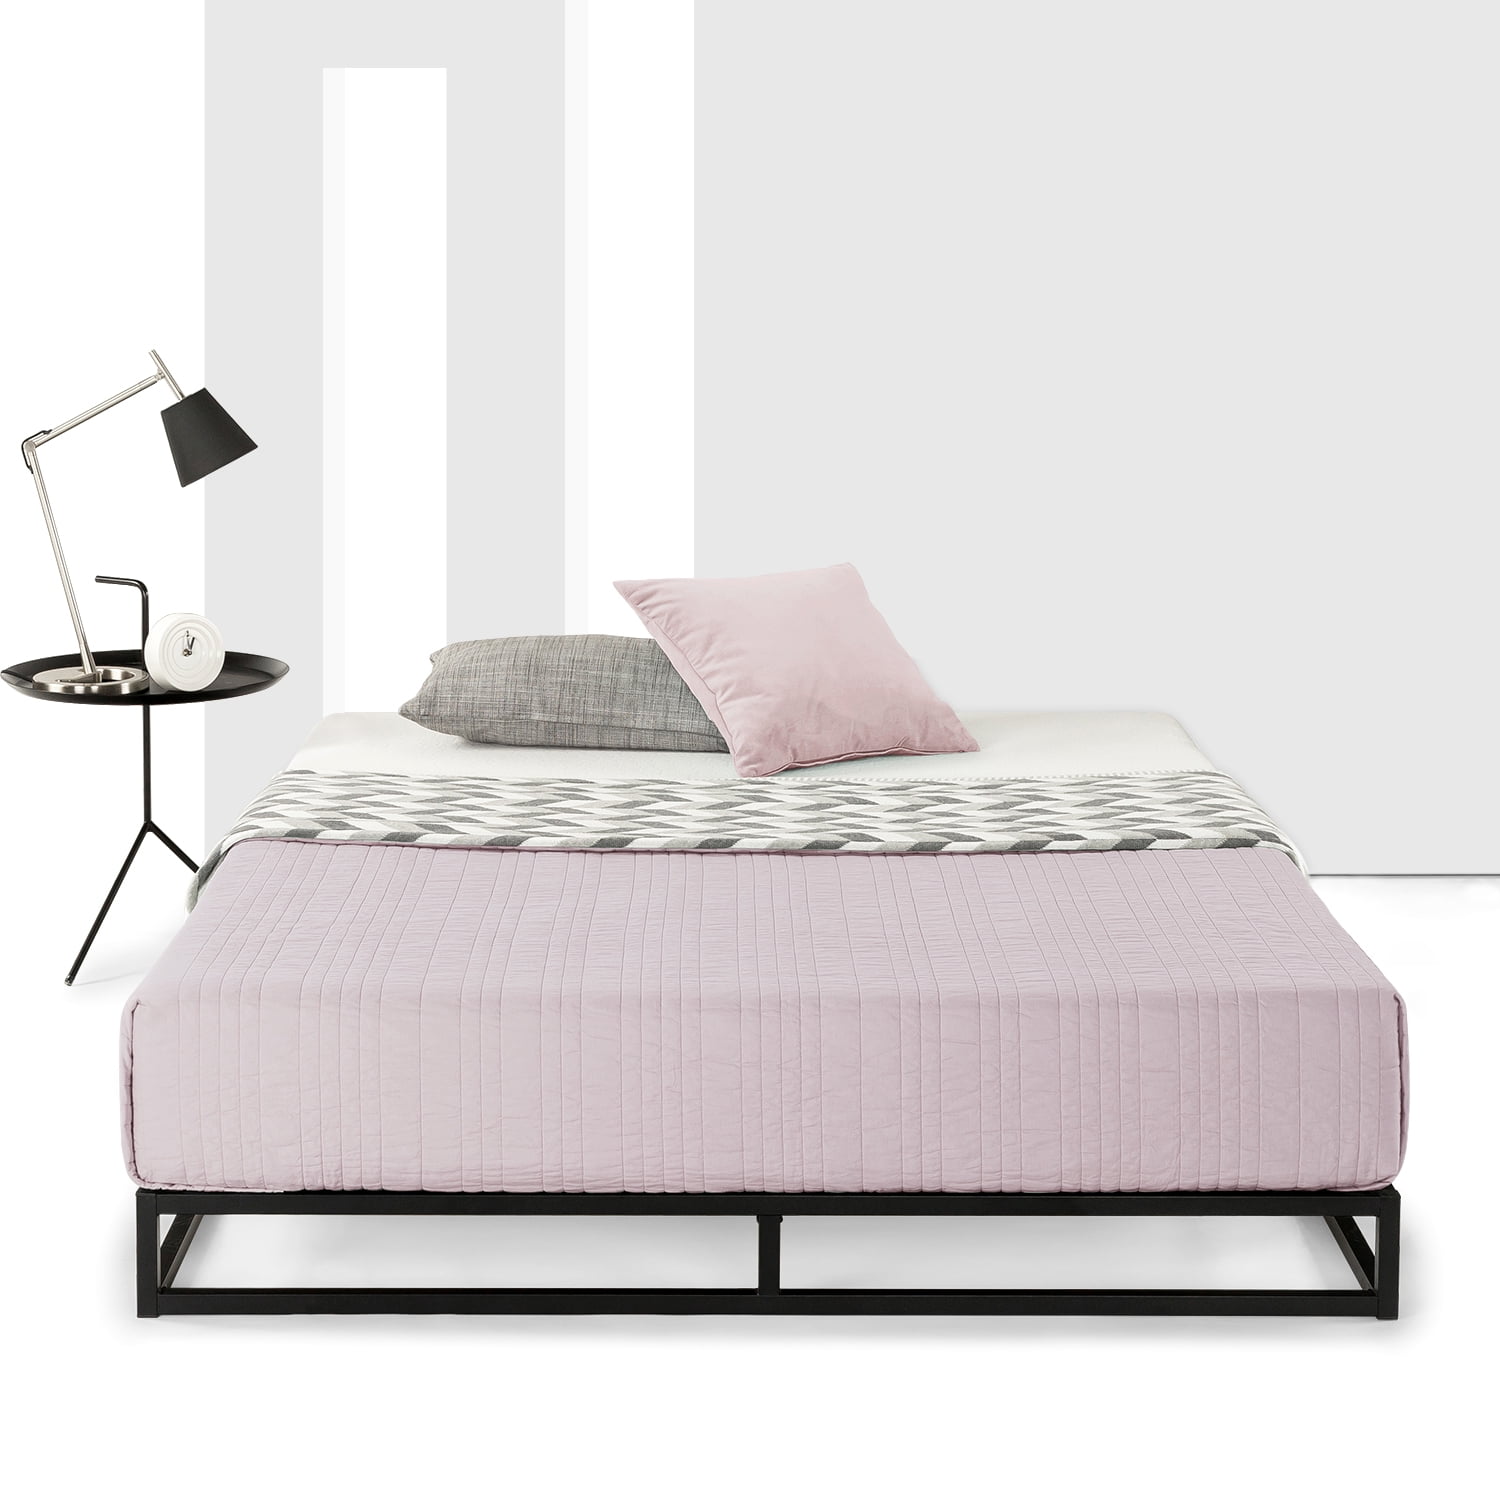 Platform Metal Bed Frame, Full Size High Rise Bed Frame